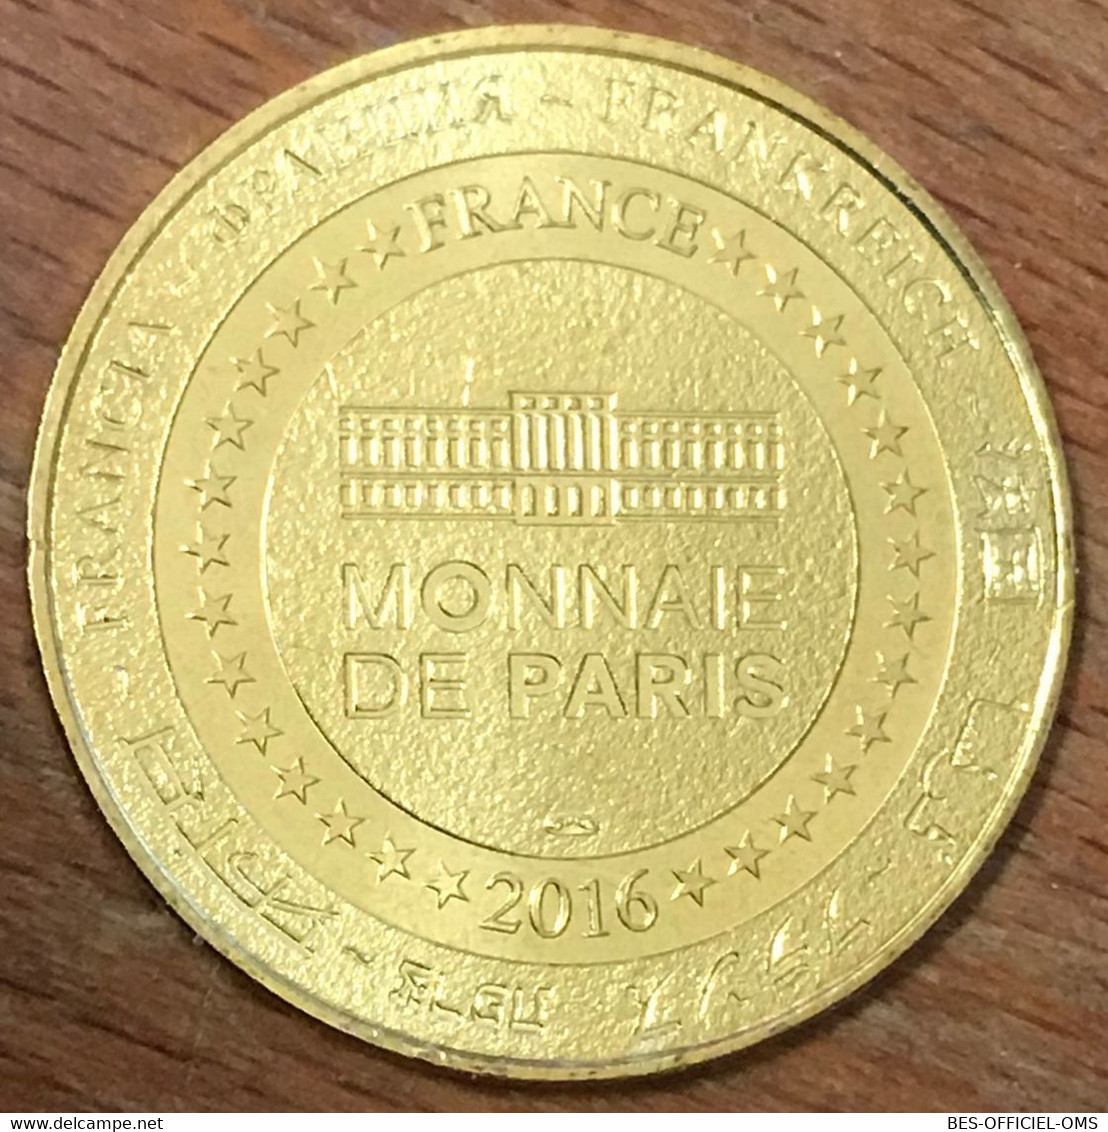 63 VULCANIA ABYSS EXPLORER MDP 2016 MÉDAILLE SOUVENIR MONNAIE DE PARIS JETON TOURISTIQUE MEDALS COINS TOKENS - 2016